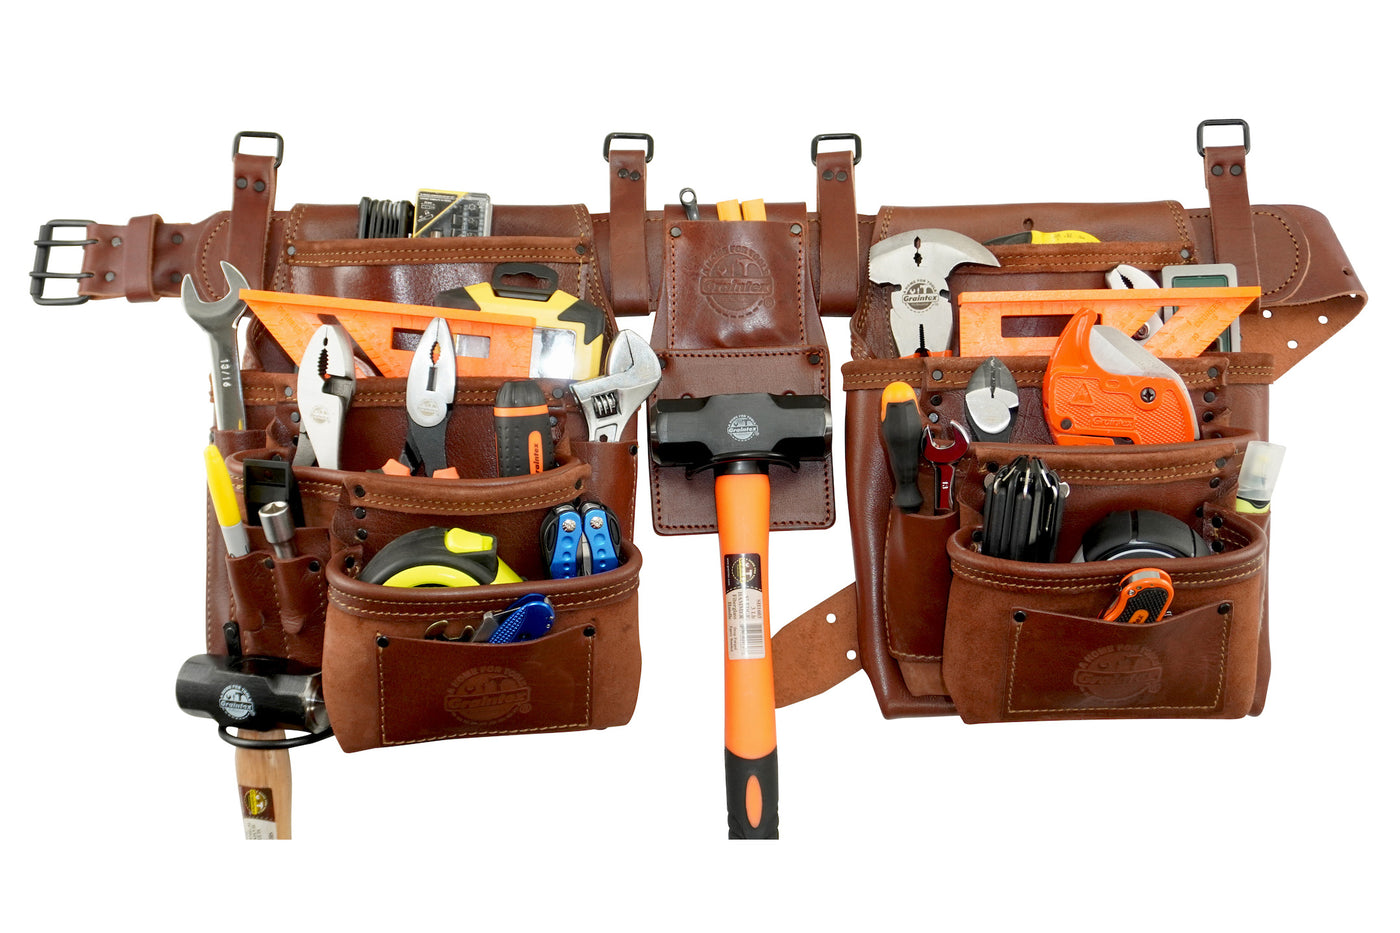 AD2762 :: 4 Piece 17 Pocket Framer's Tool Belt Combo Ambassador Series Chestnut Brown Color Grain Leather